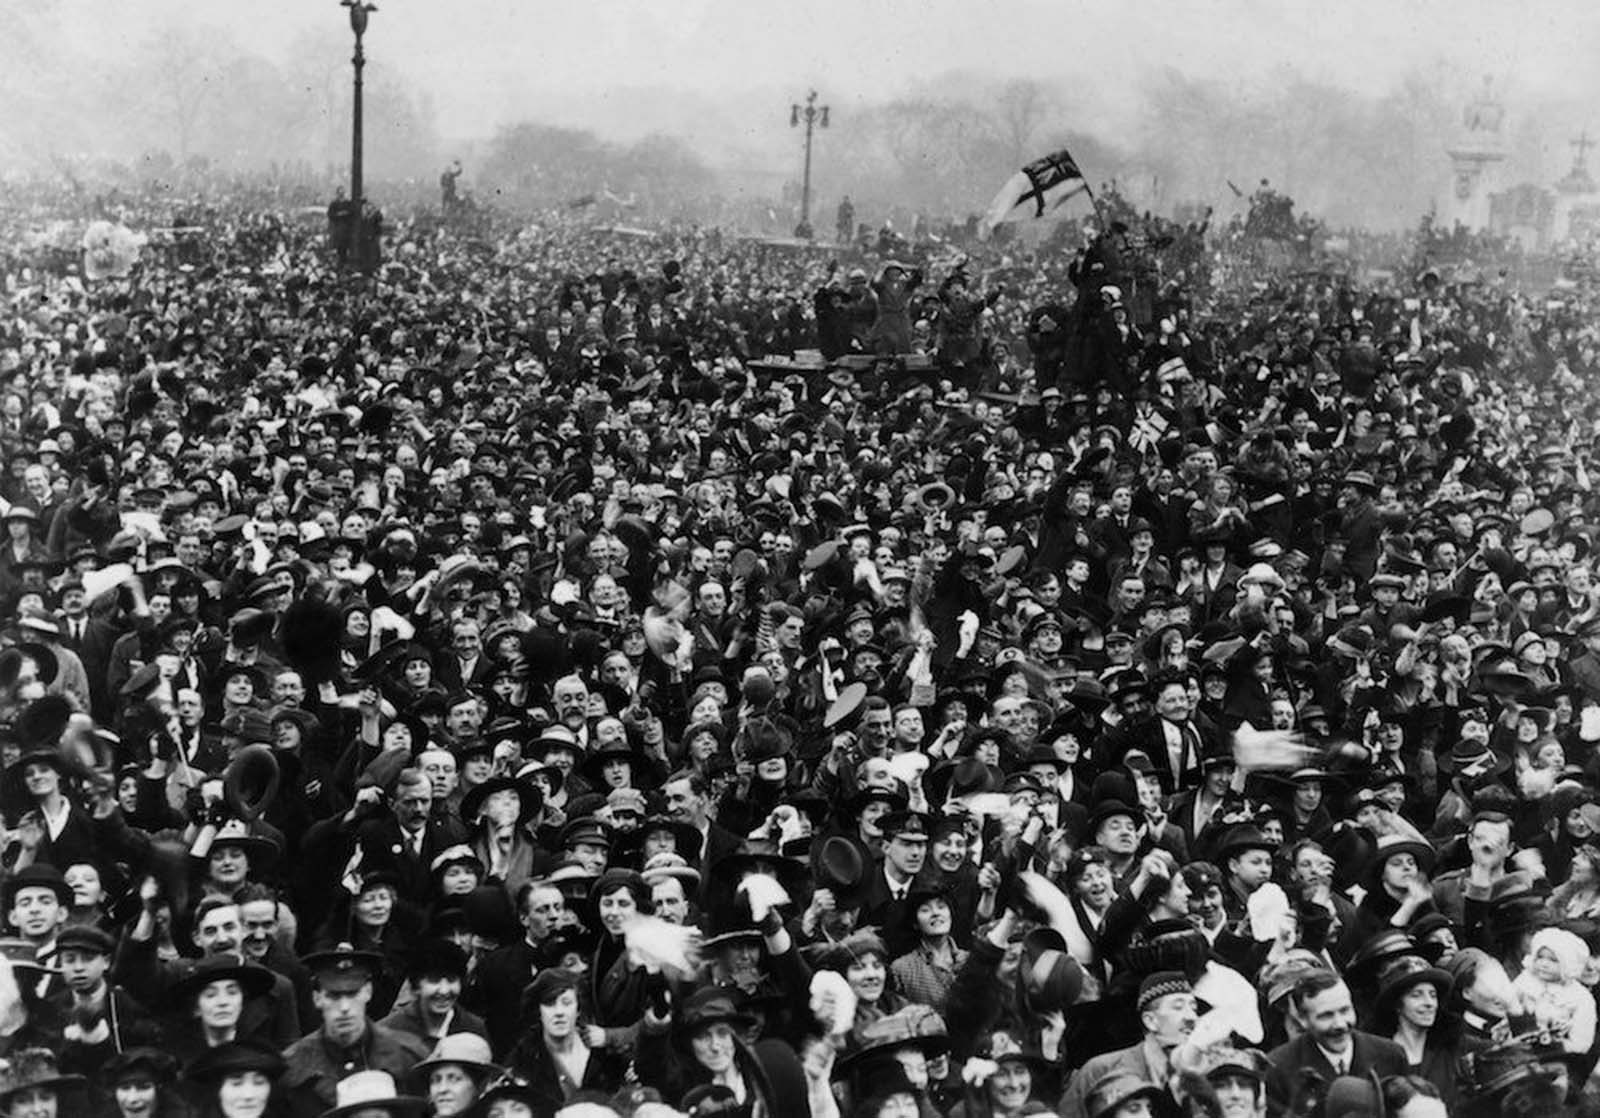 Jubilant crowds close to Buckingham Palace, London, celebrating Armistice Day.